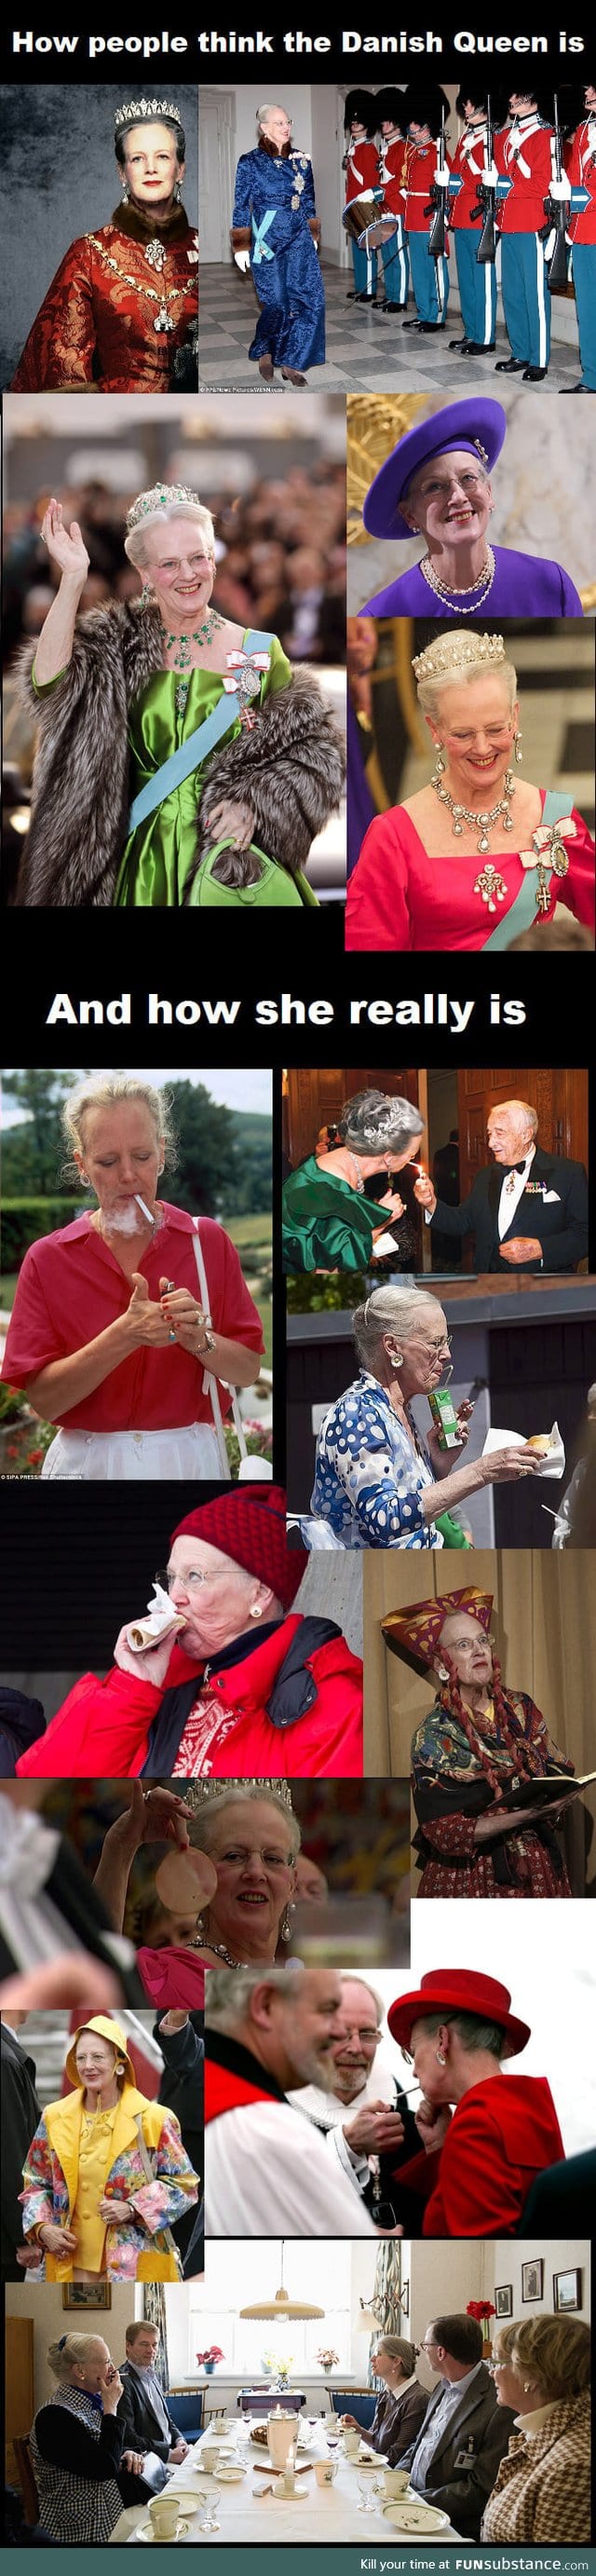 The Queen of Denmark